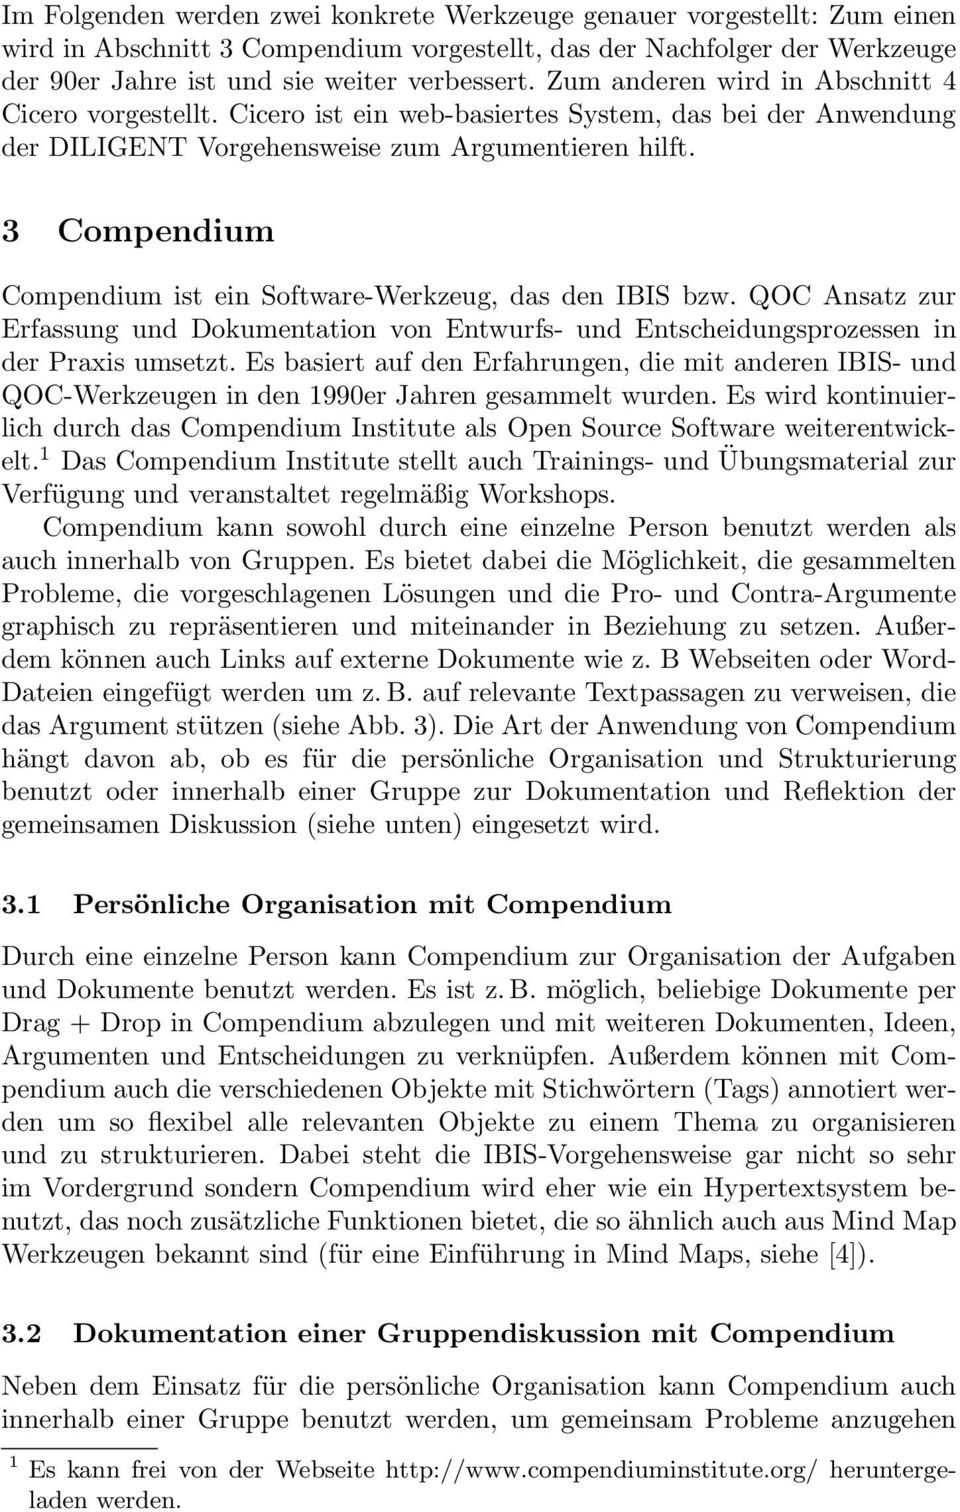 3 Compendium Compendium ist ein Software-Werkzeug, das den IBIS bzw. QOC Ansatz zur Erfassung und Dokumentation von Entwurfs- und Entscheidungsprozessen in der Praxis umsetzt.